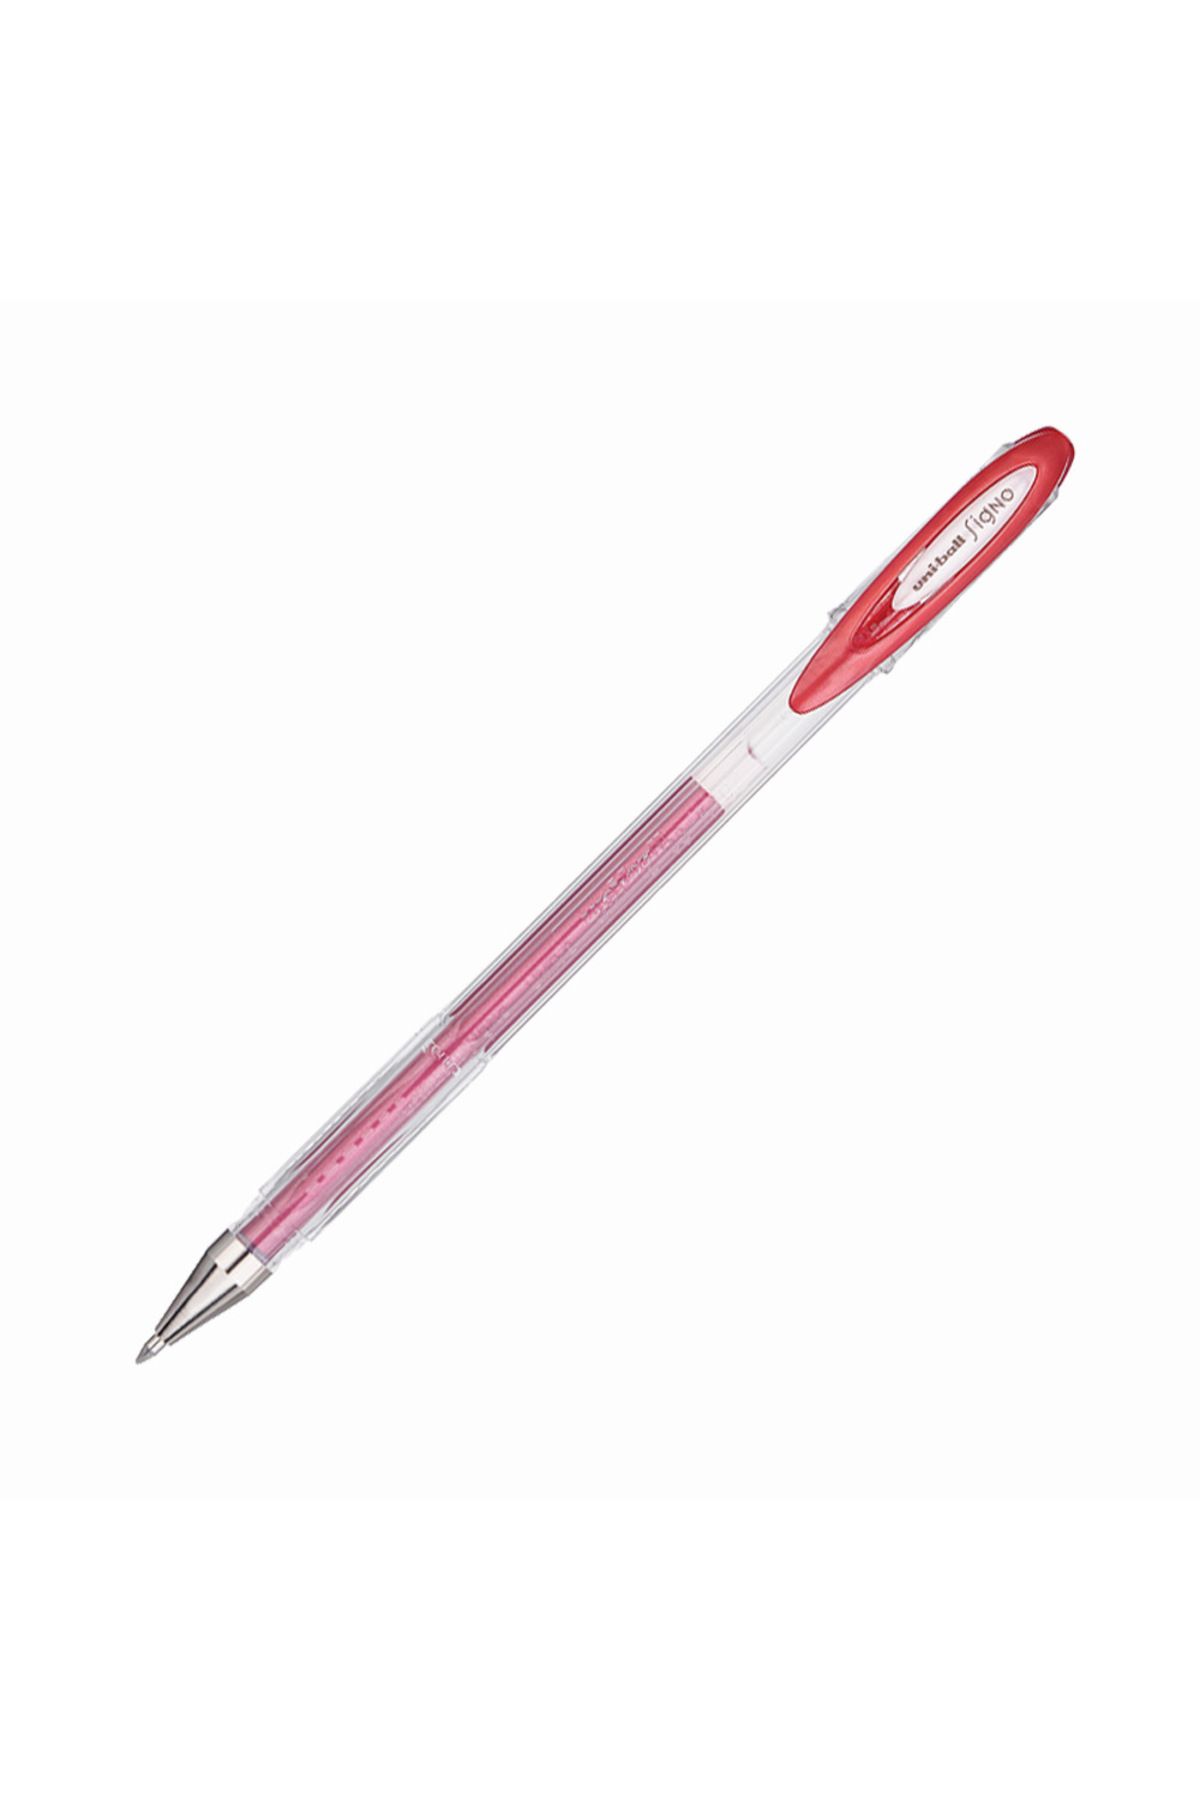 Uni -ball Signo Noble Metal Yaldızlı Kalem Kırmızı